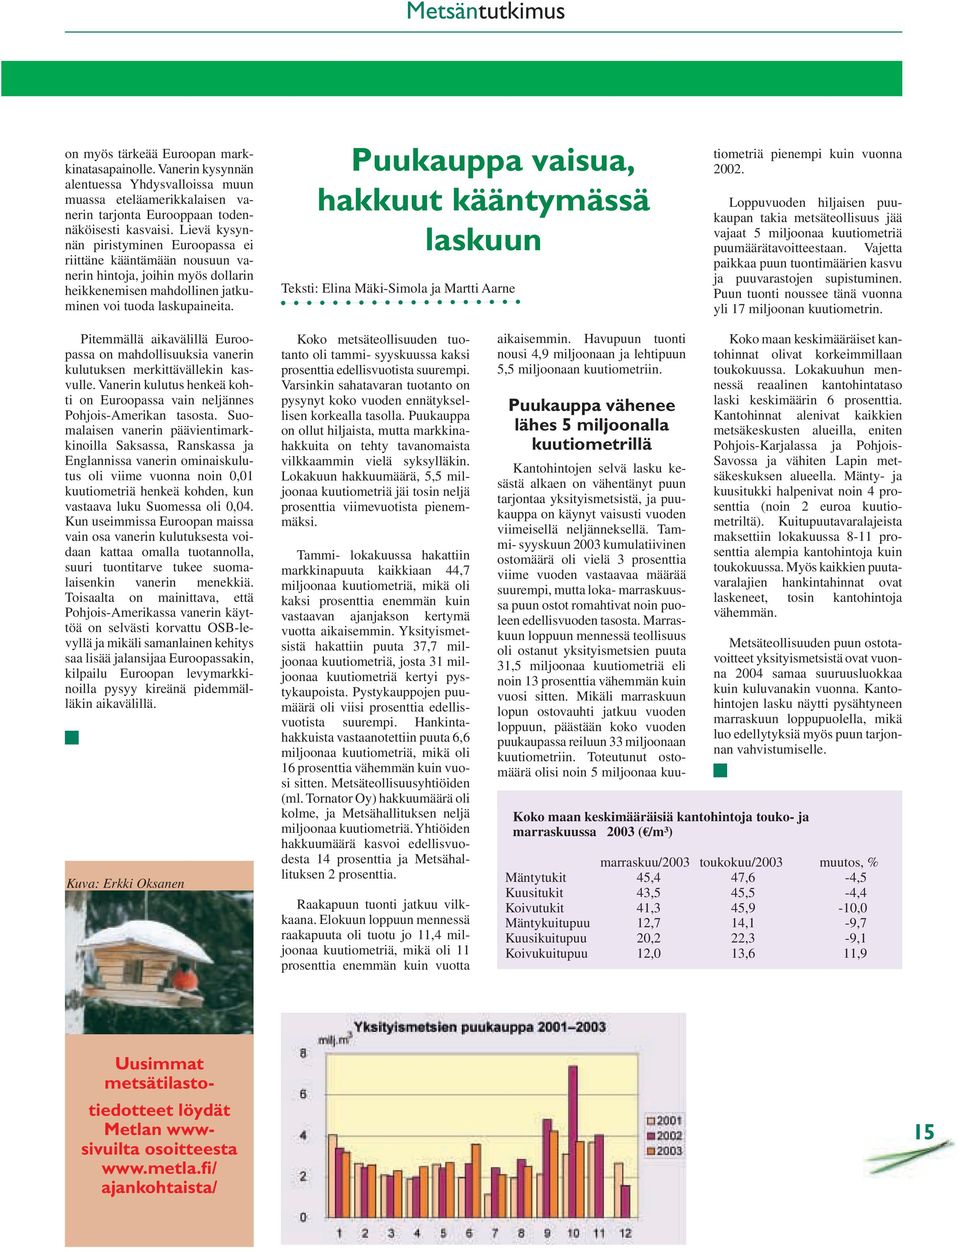 Puukauppa vaisua, hakkuut kääntymässä laskuun Teksti: Elina Mäki-Simola ja Martti Aarne tiometriä pienempi kuin vuonna 2002.